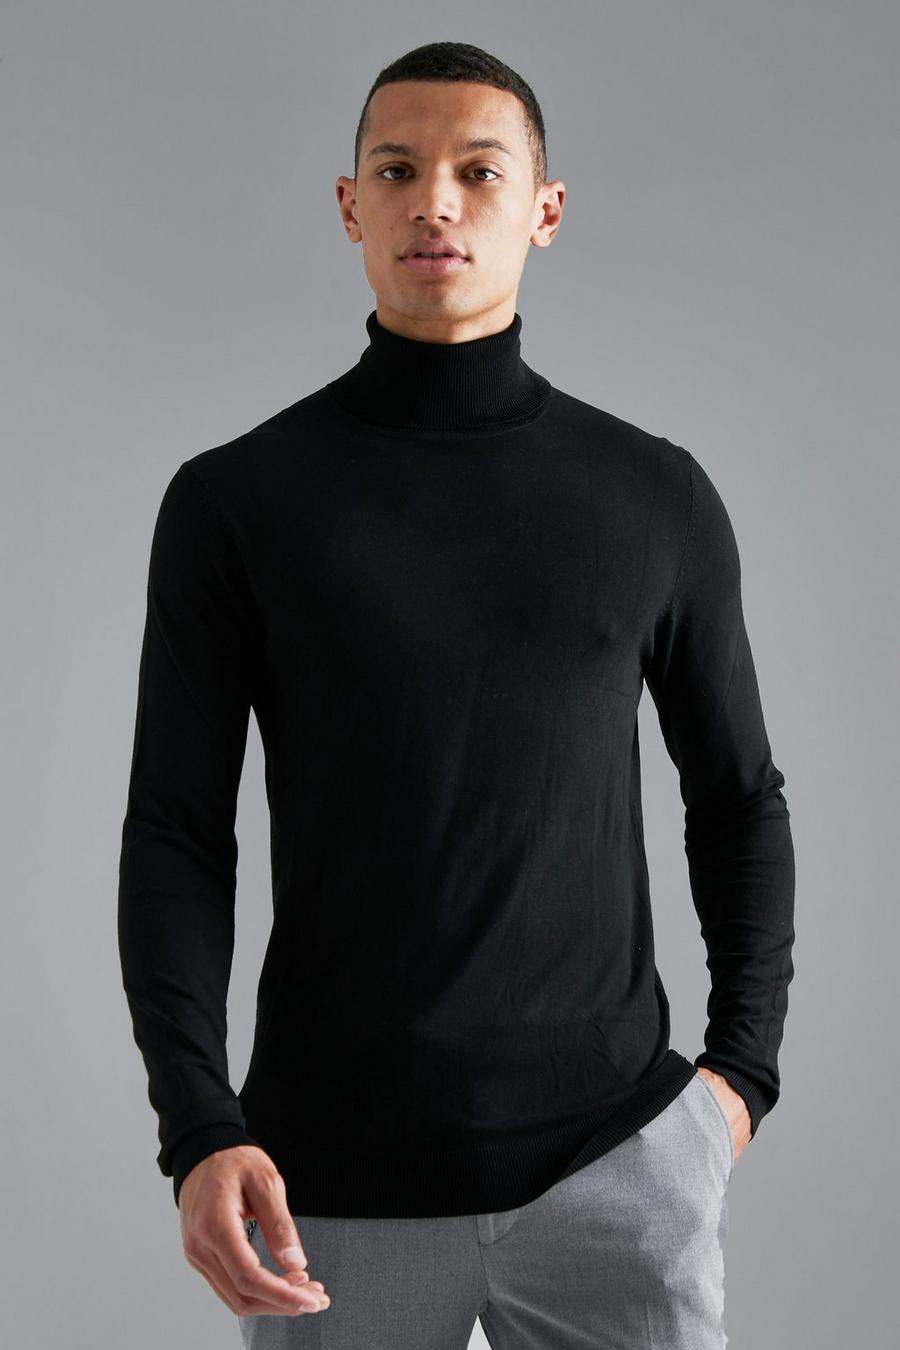 שחור nero סוודר בגזרה צמודה מבד ממוחזר עם צווארון גולף לגברים גבוהים